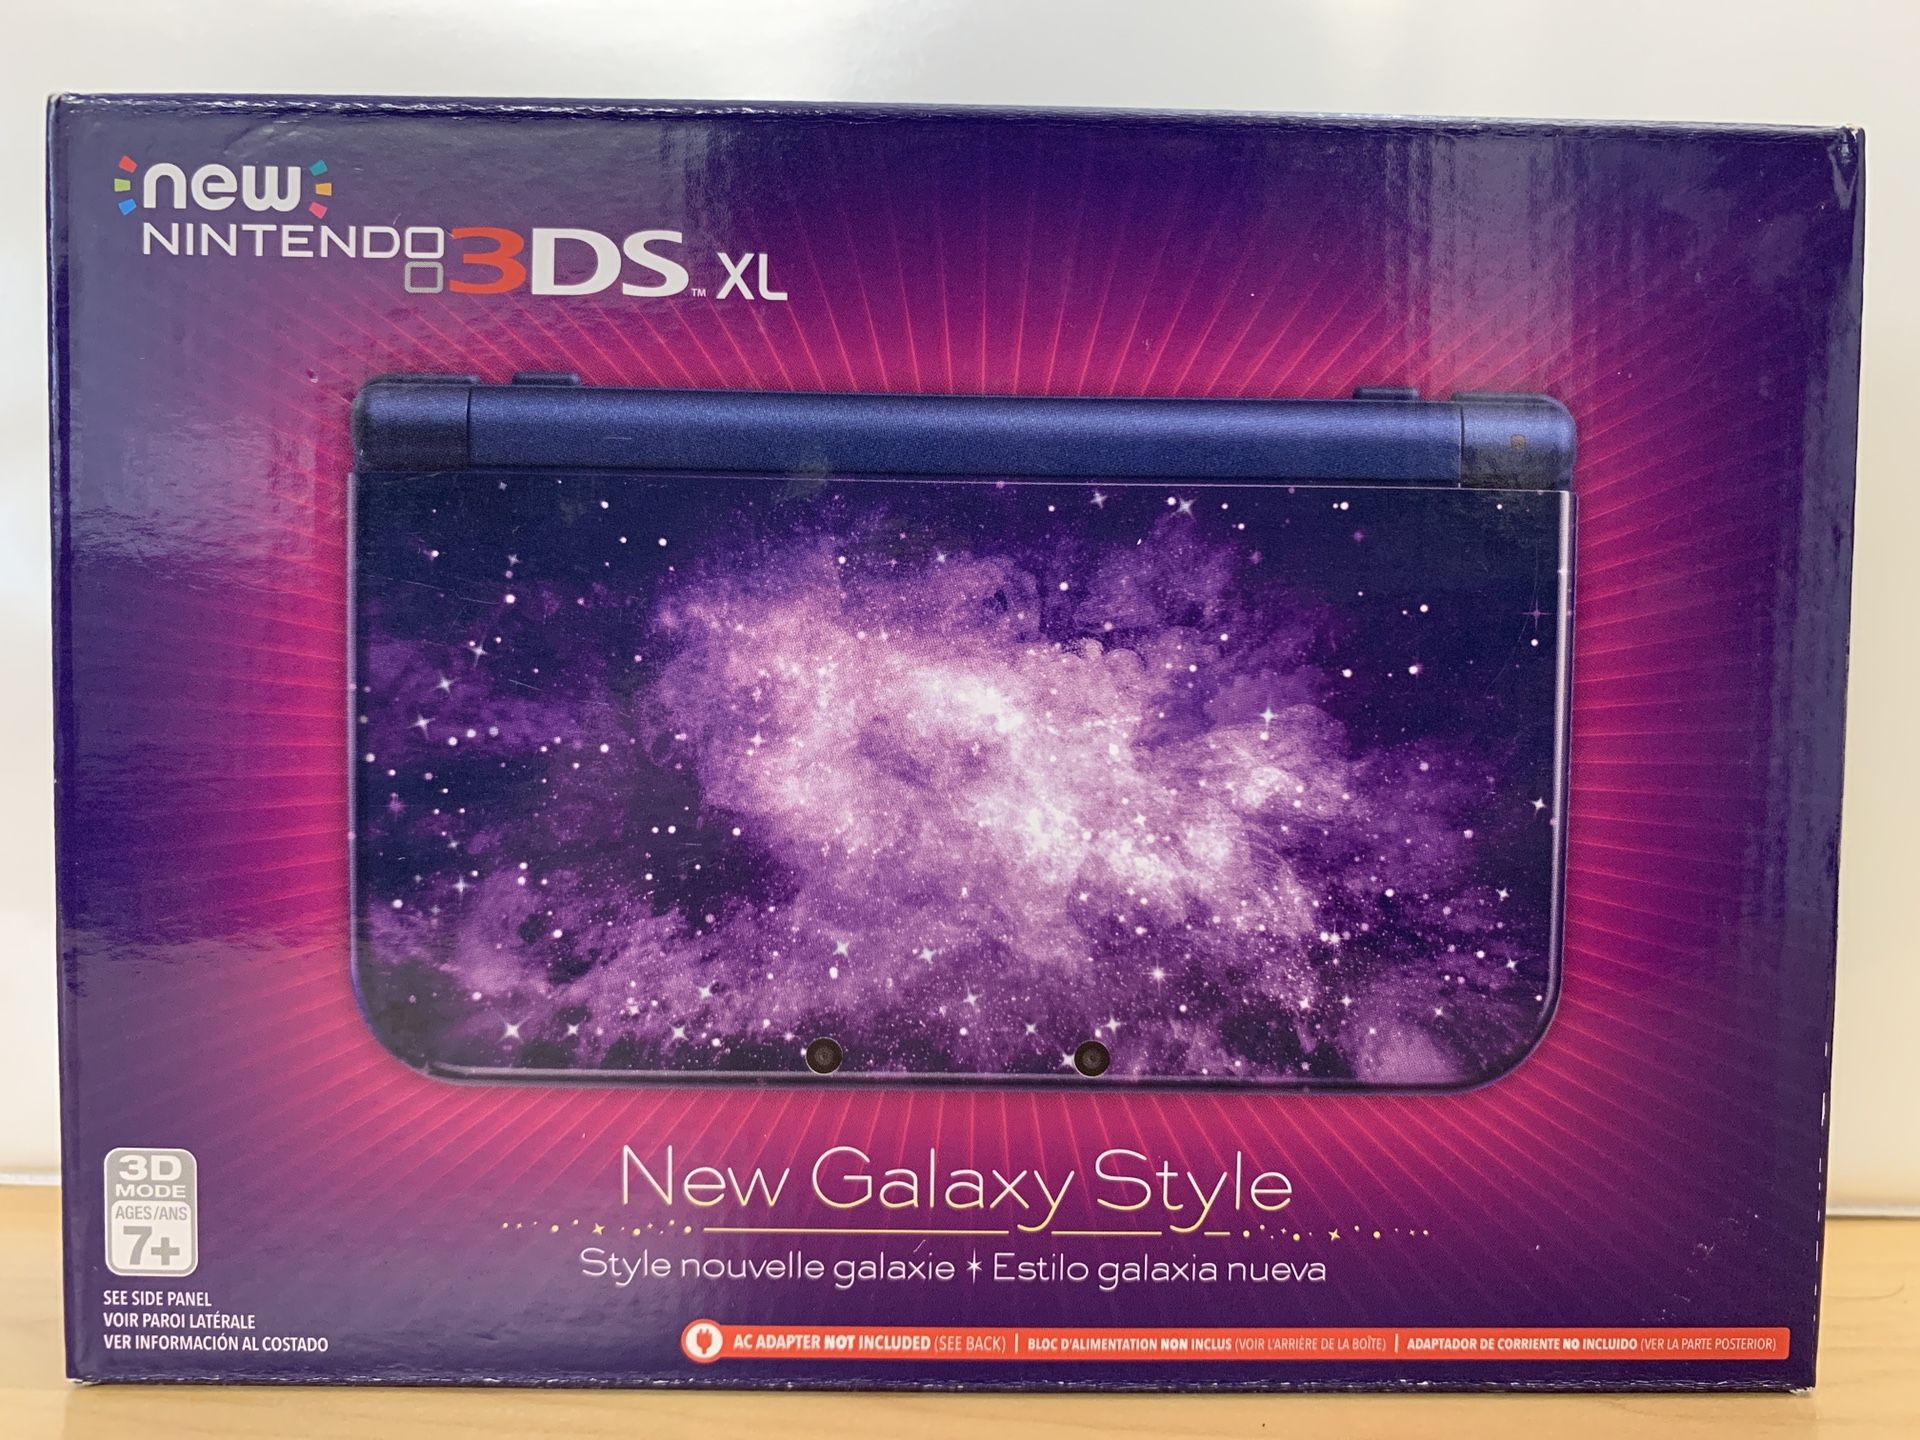 NIB Nintendo 3DS XL Galaxy Style